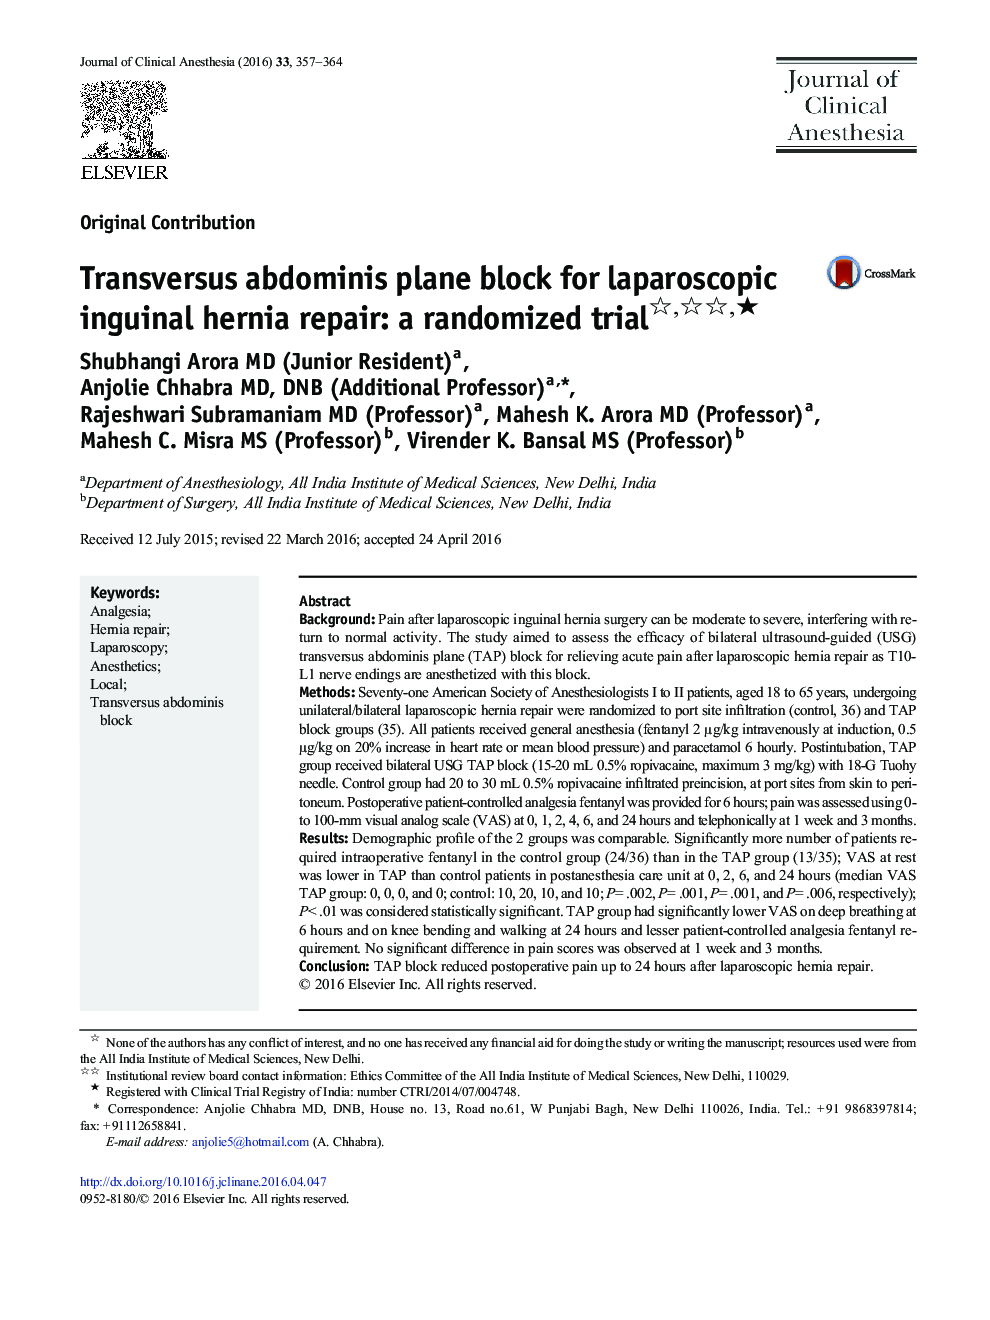 Transversus abdominis plane block for laparoscopic inguinal hernia repair: a randomized trial ★